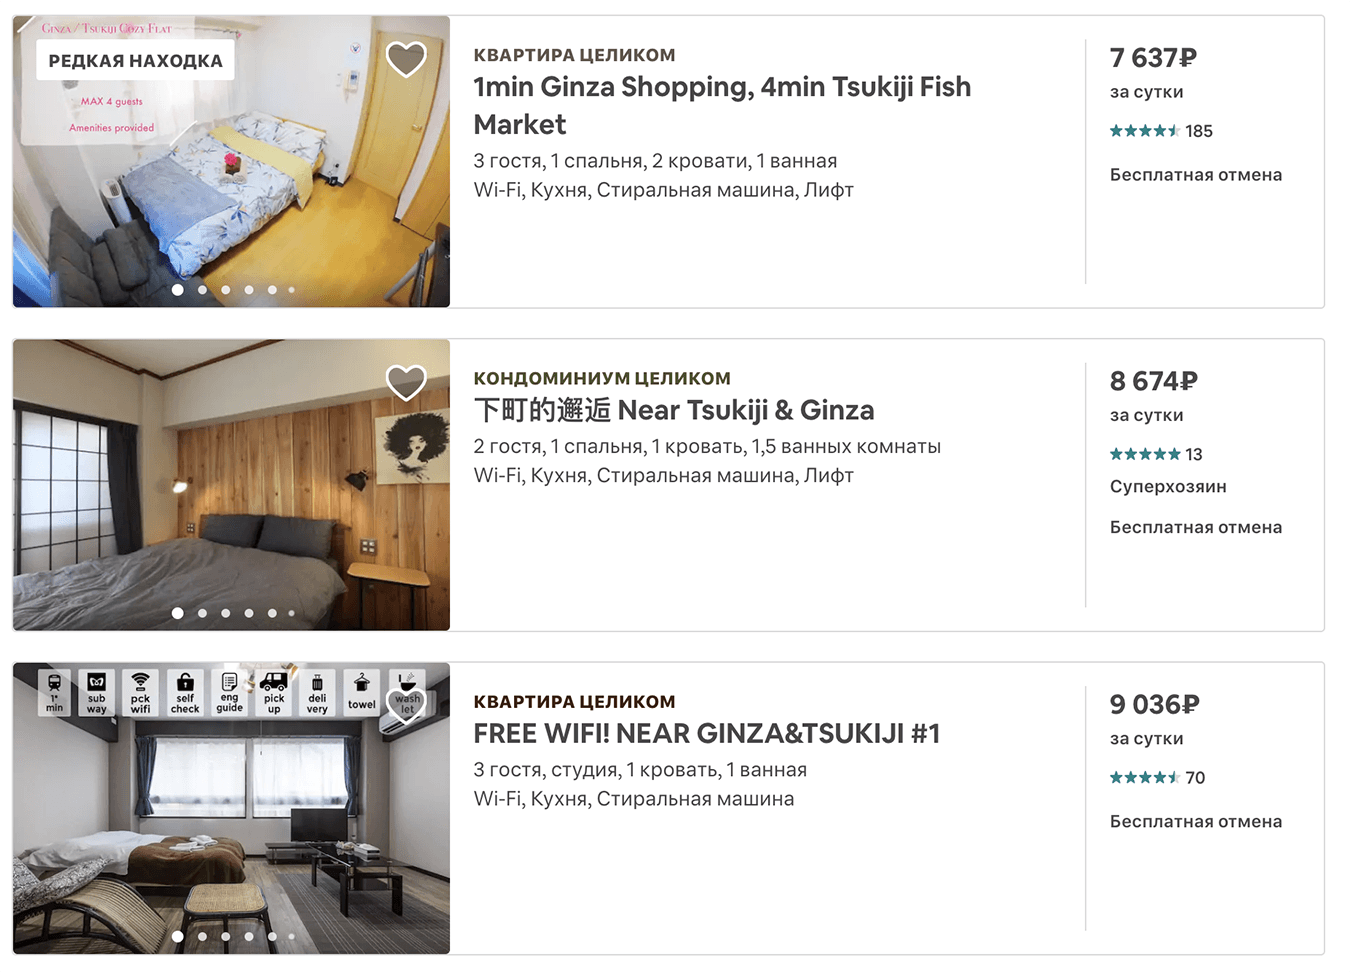 Квартиры на «Эйр-би-эн-би» в Гиндзе. Из этого района удобно ездить по всему Токио, но стоит жилье от 7000 ₽ за сутки